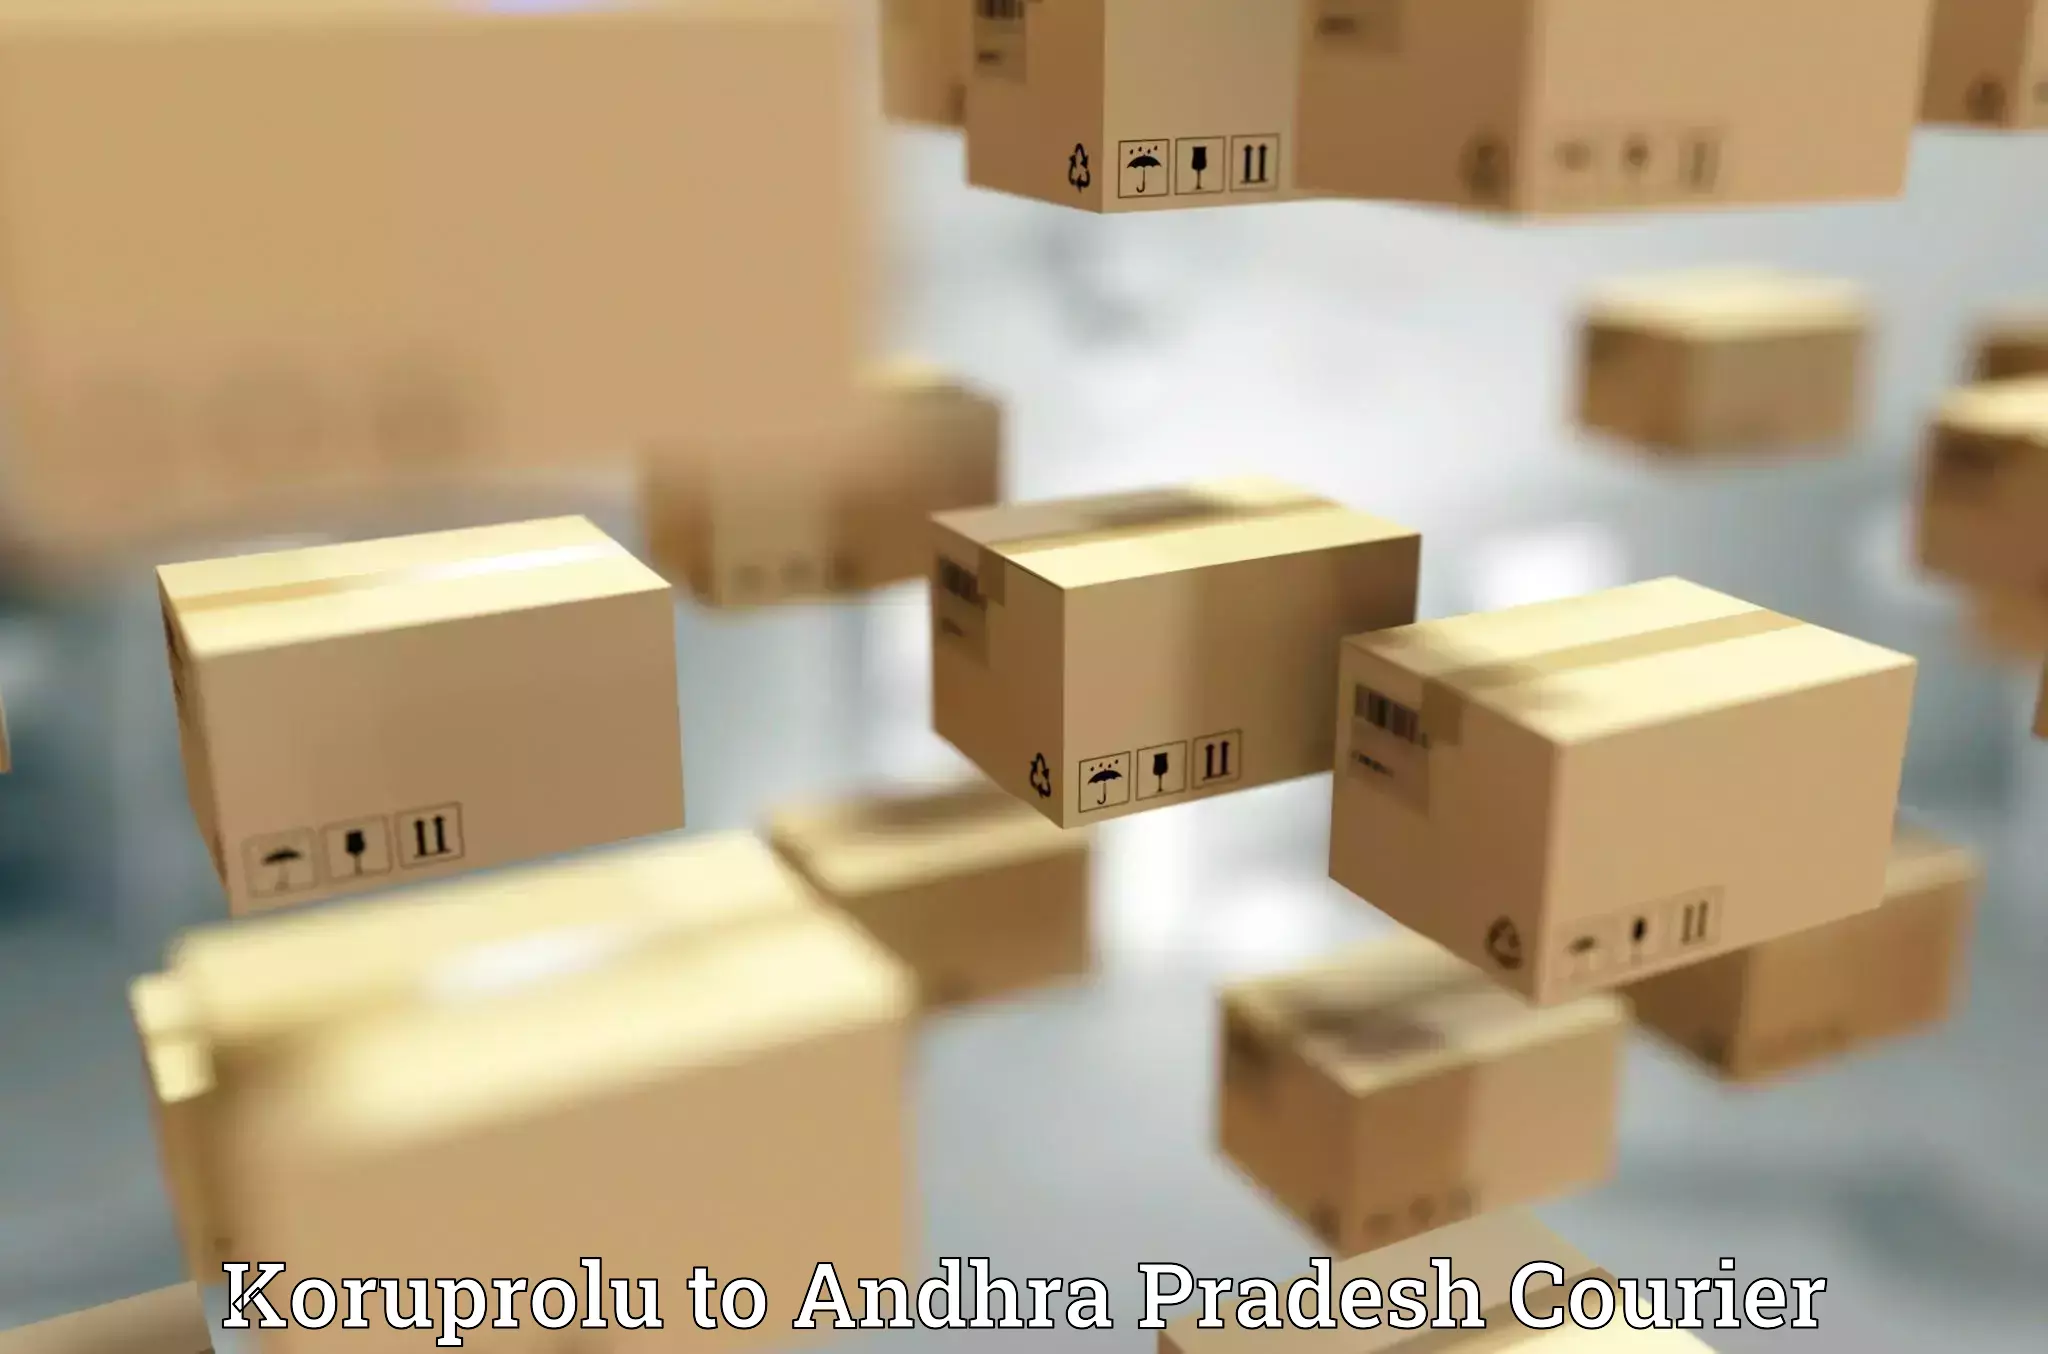 24-hour courier service Koruprolu to Andhra Pradesh